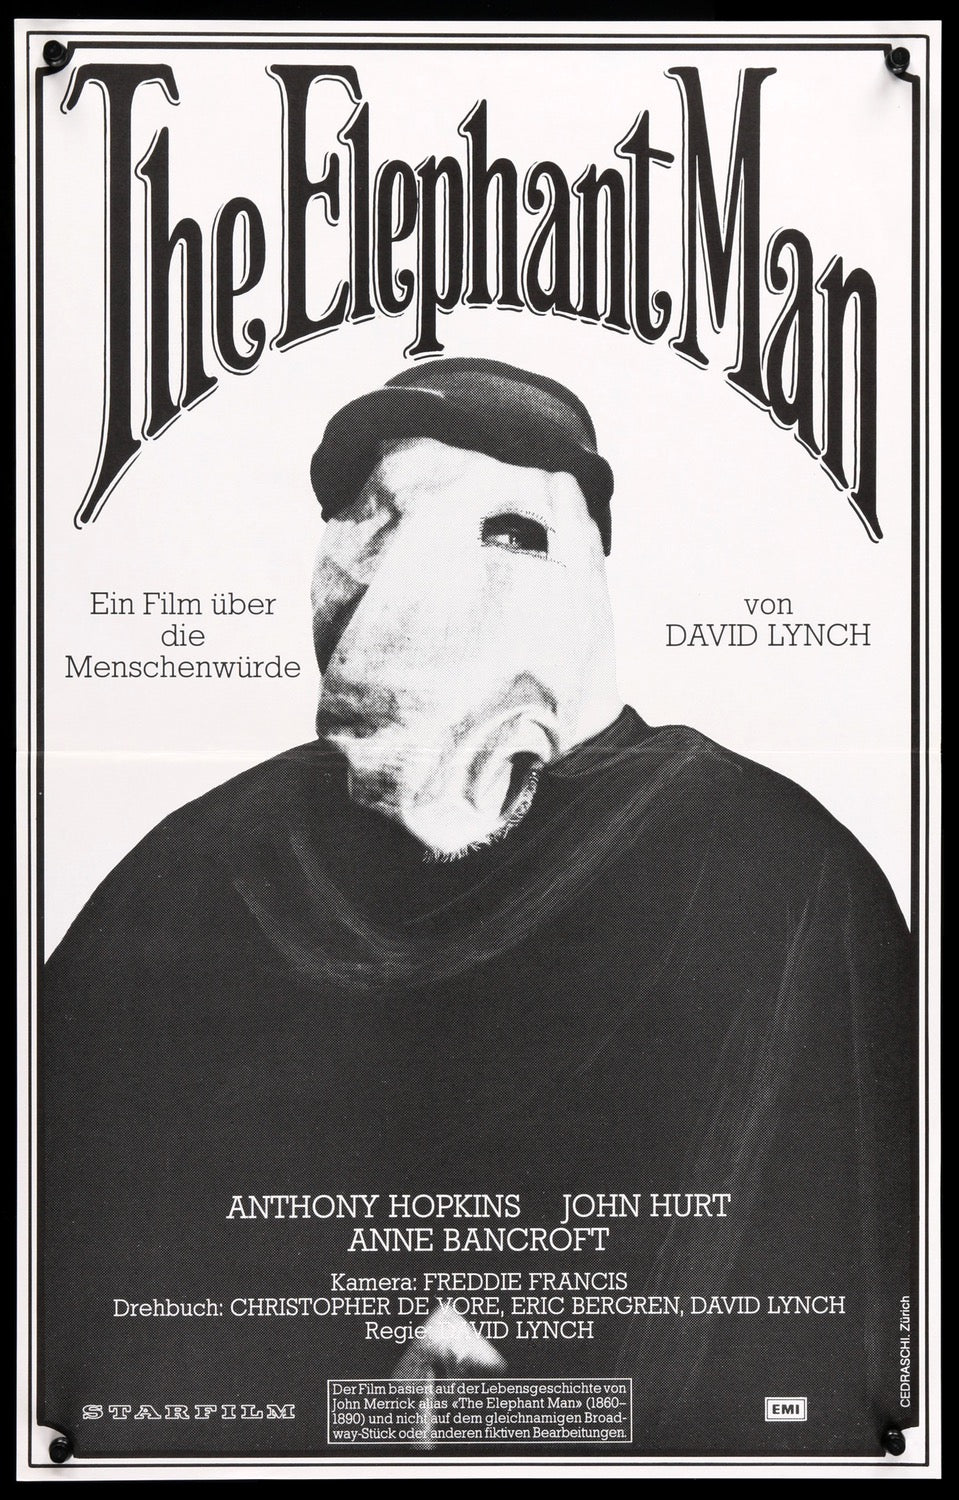 Elephant Man (1980) original movie poster for sale at Original Film Art